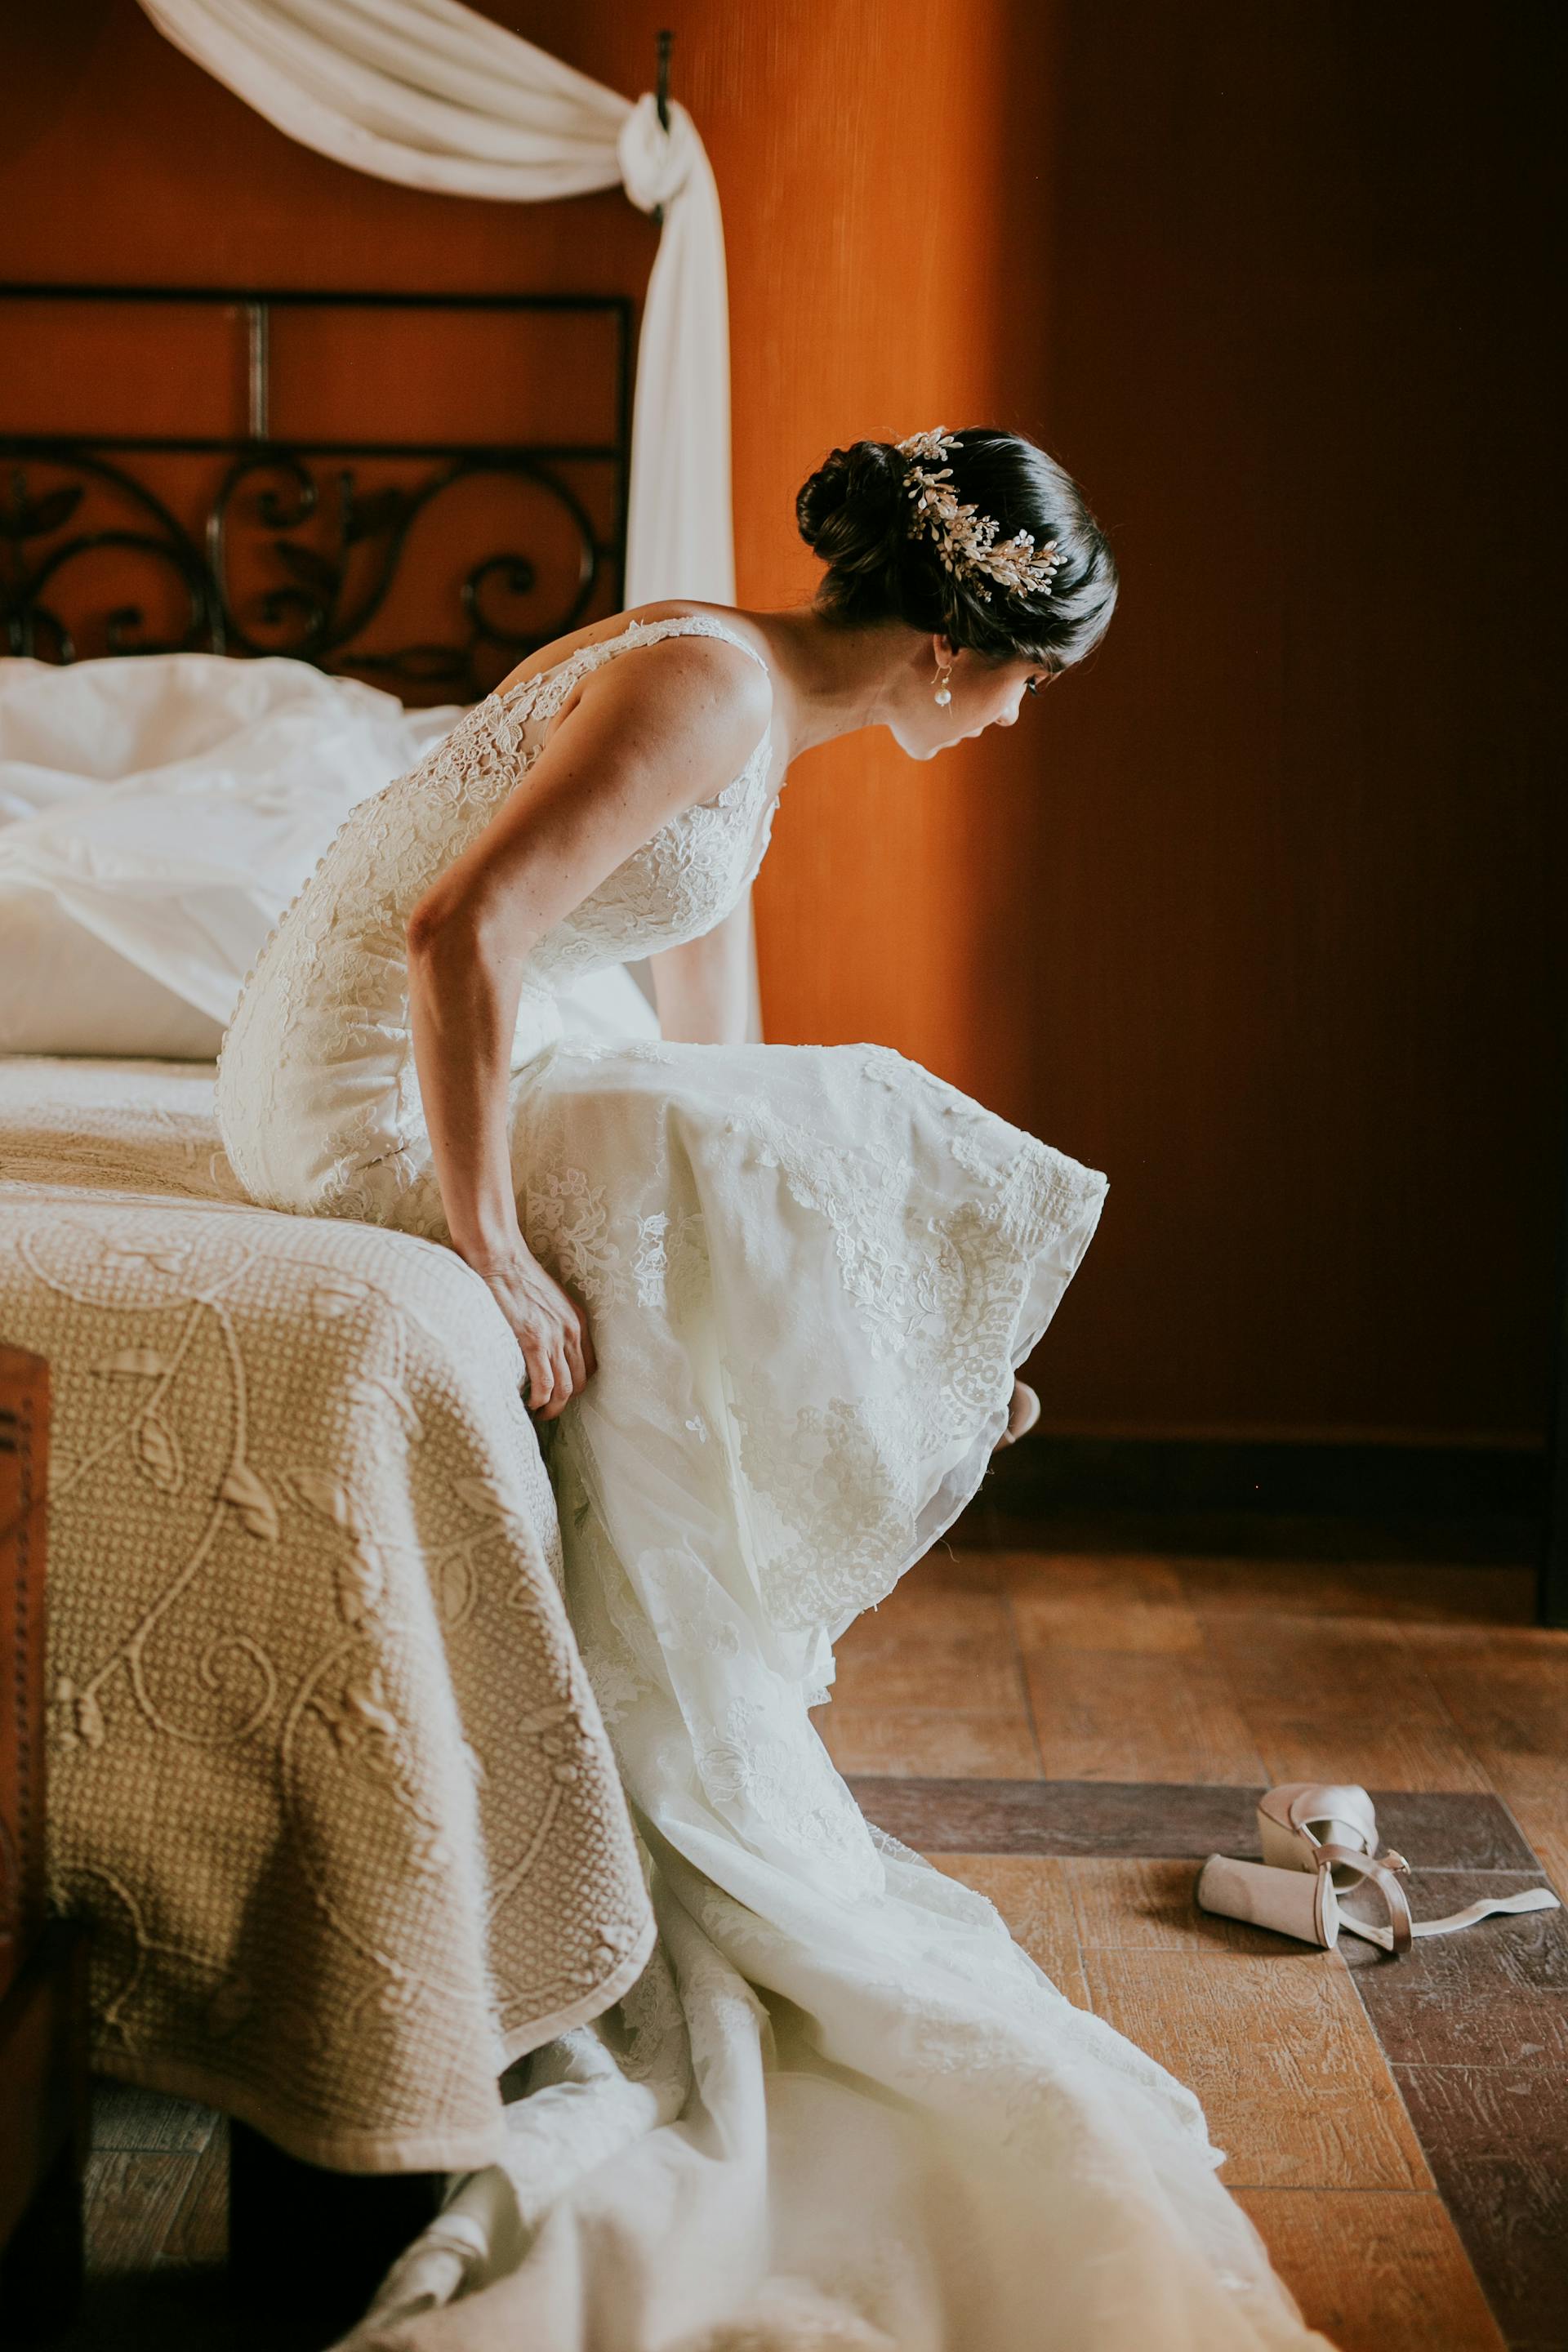 Une mariée assise sur un lit | Source : Pexels